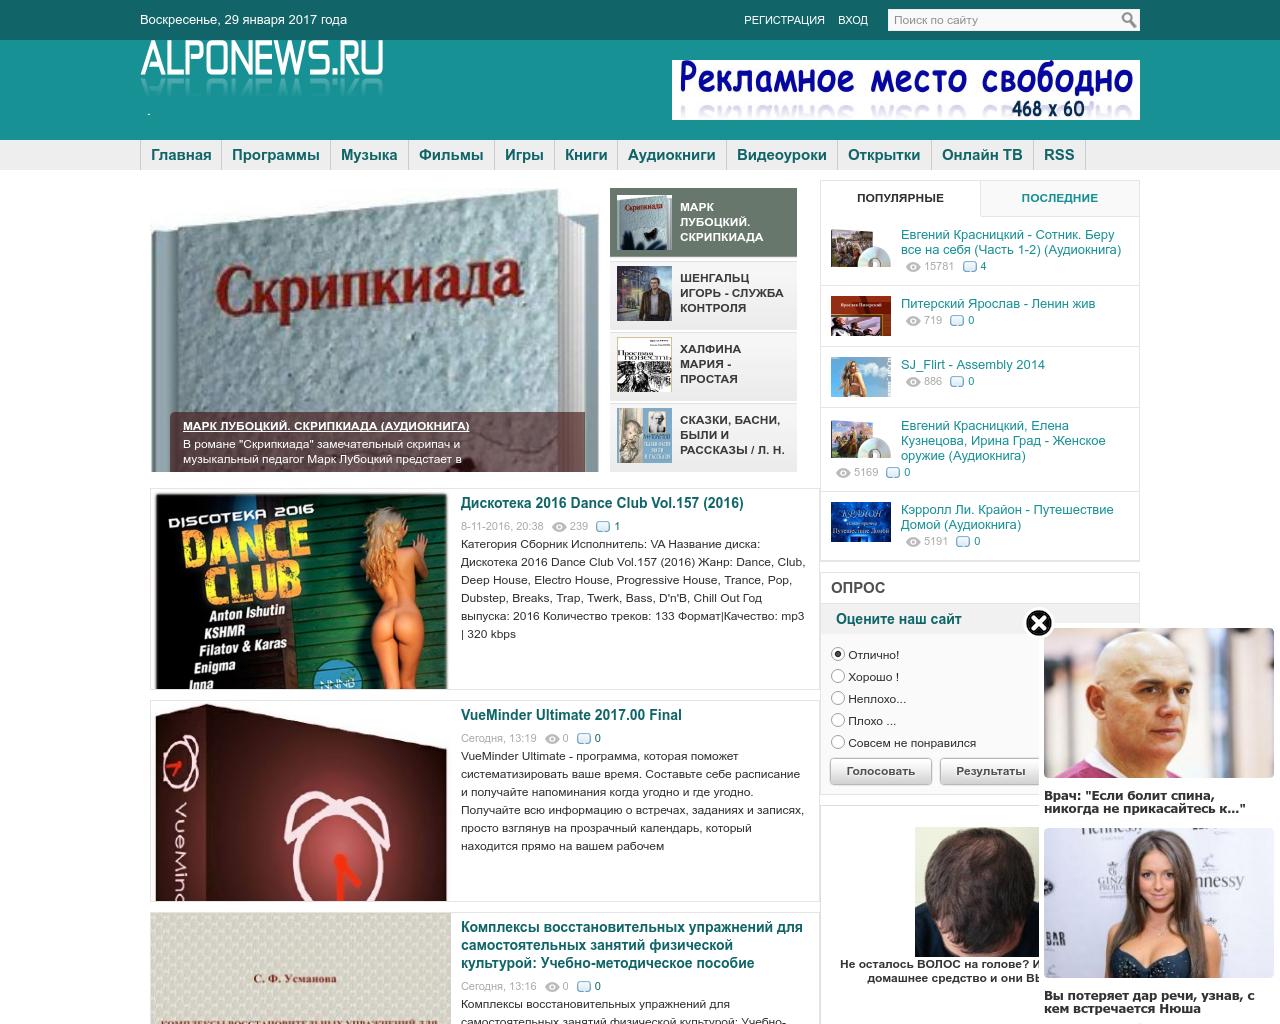 Изображение сайта alponews.ru в разрешении 1280x1024